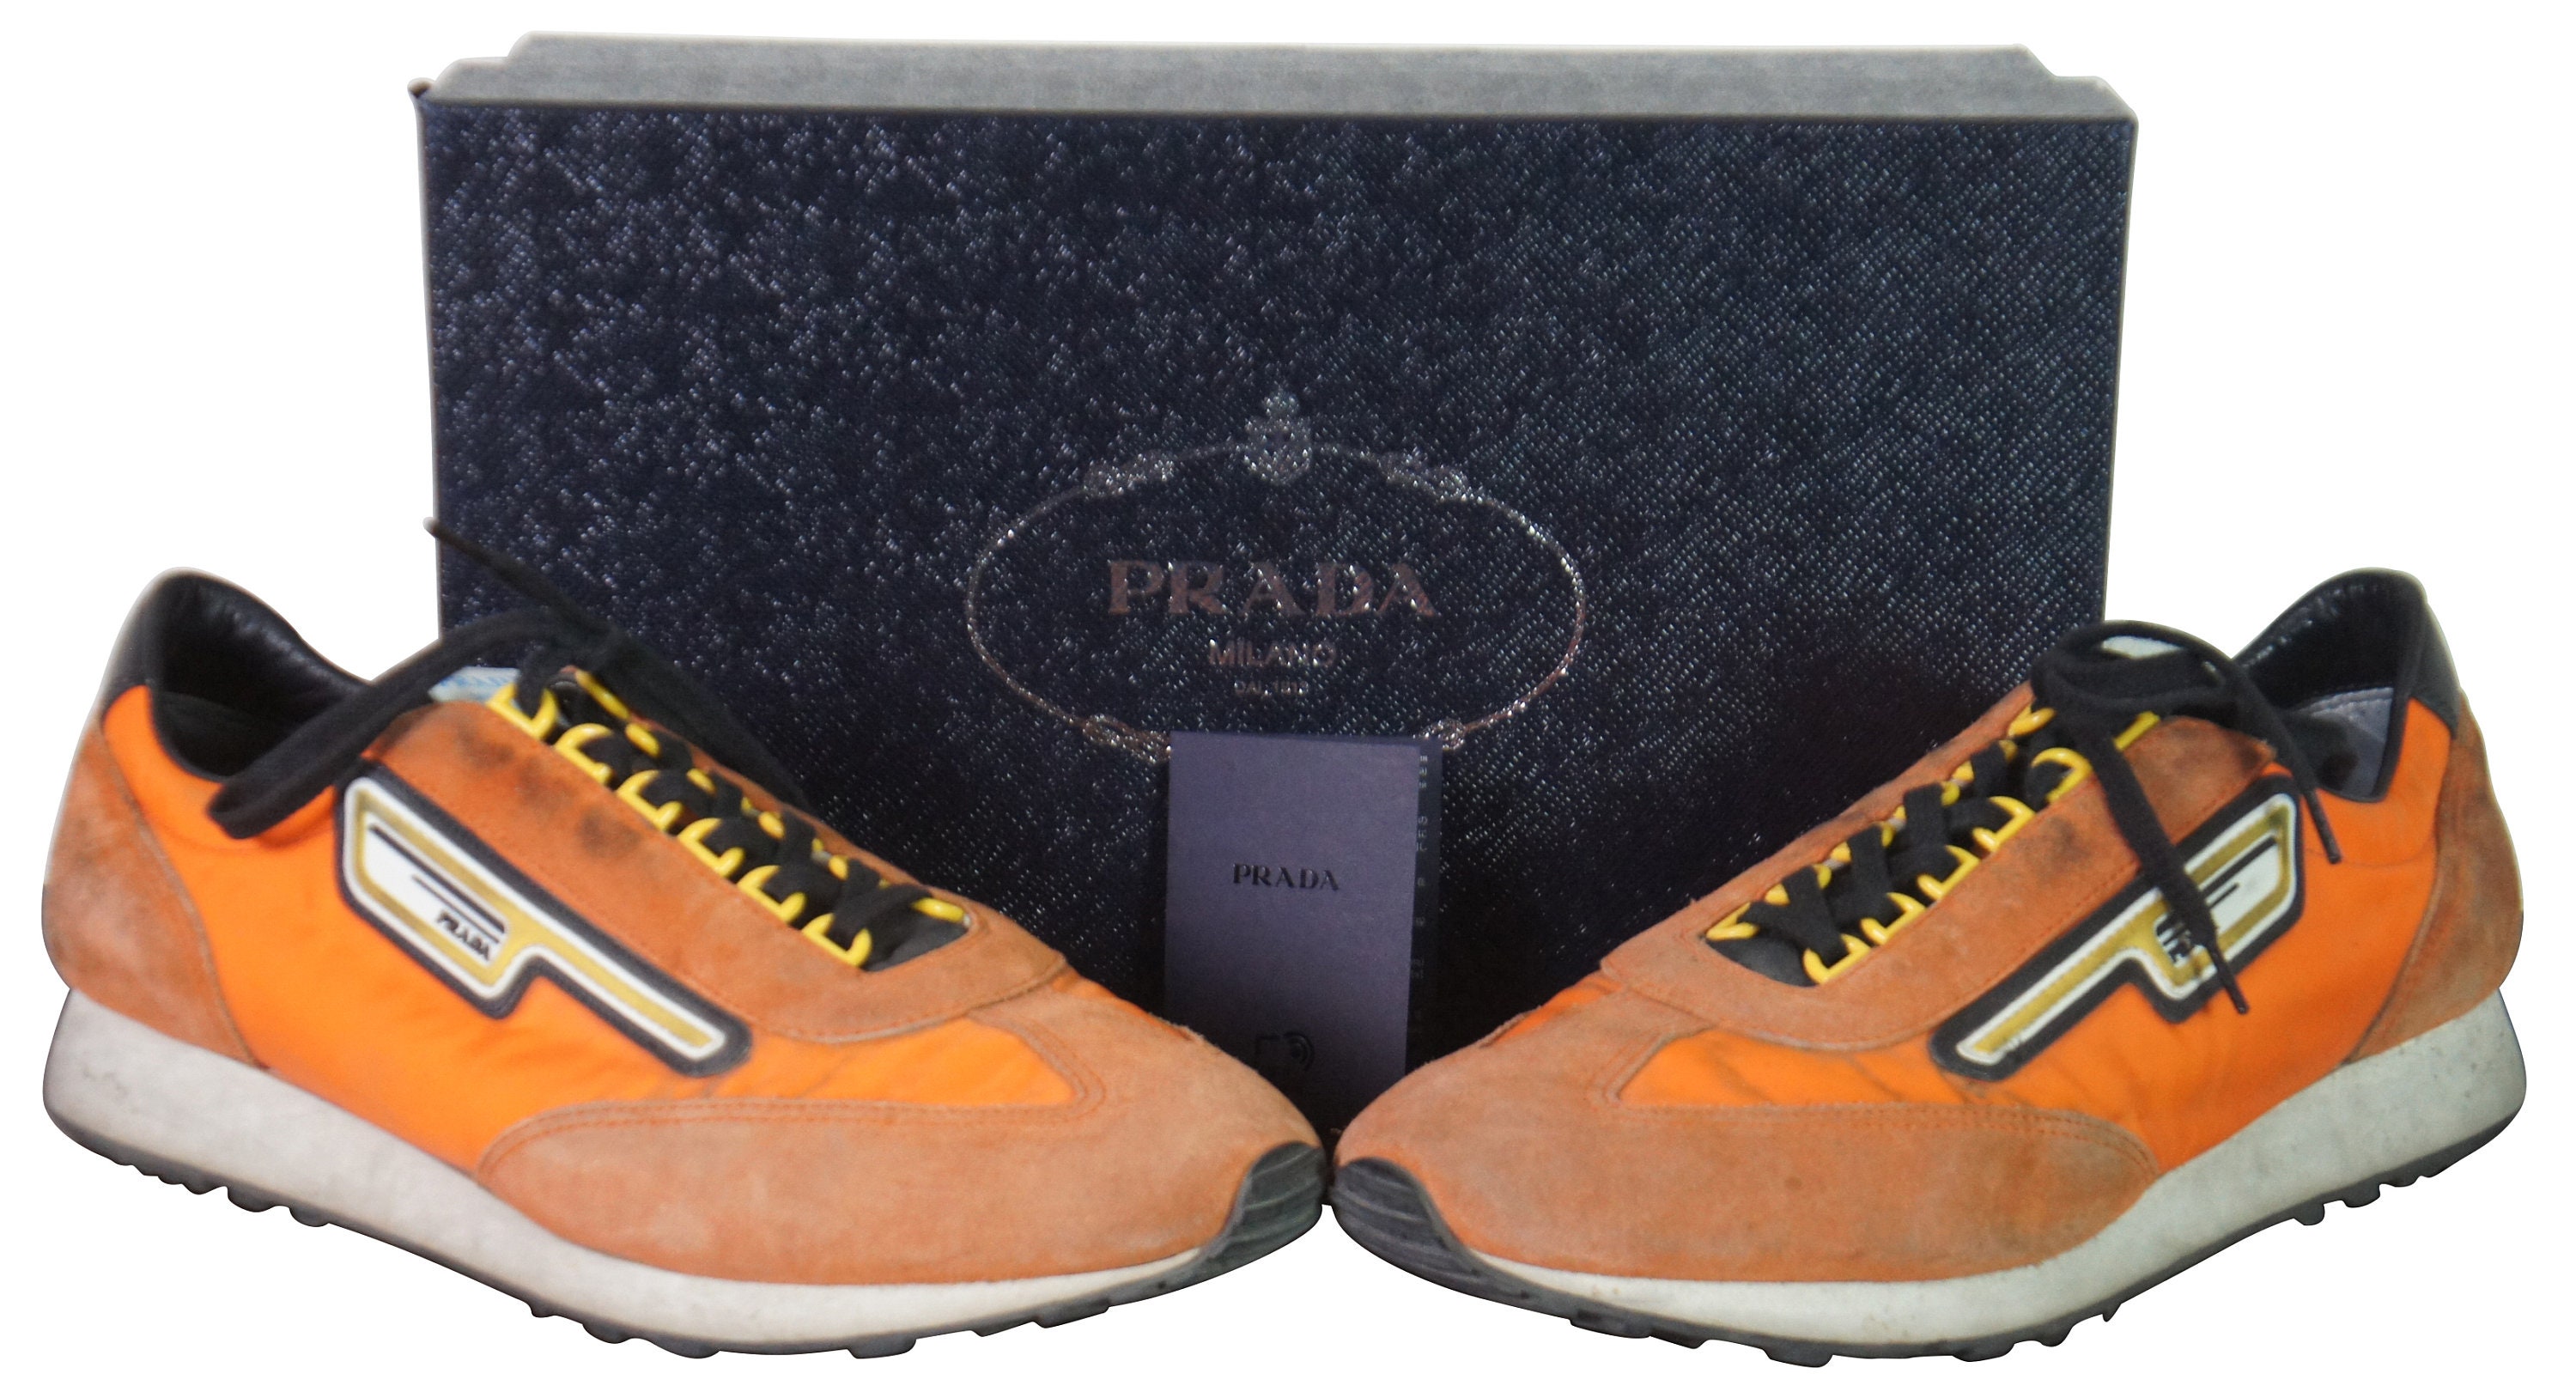 Vintage Prada Suede & Nylon Aragosta Orange Sneakers Shoes - Etsy Finland